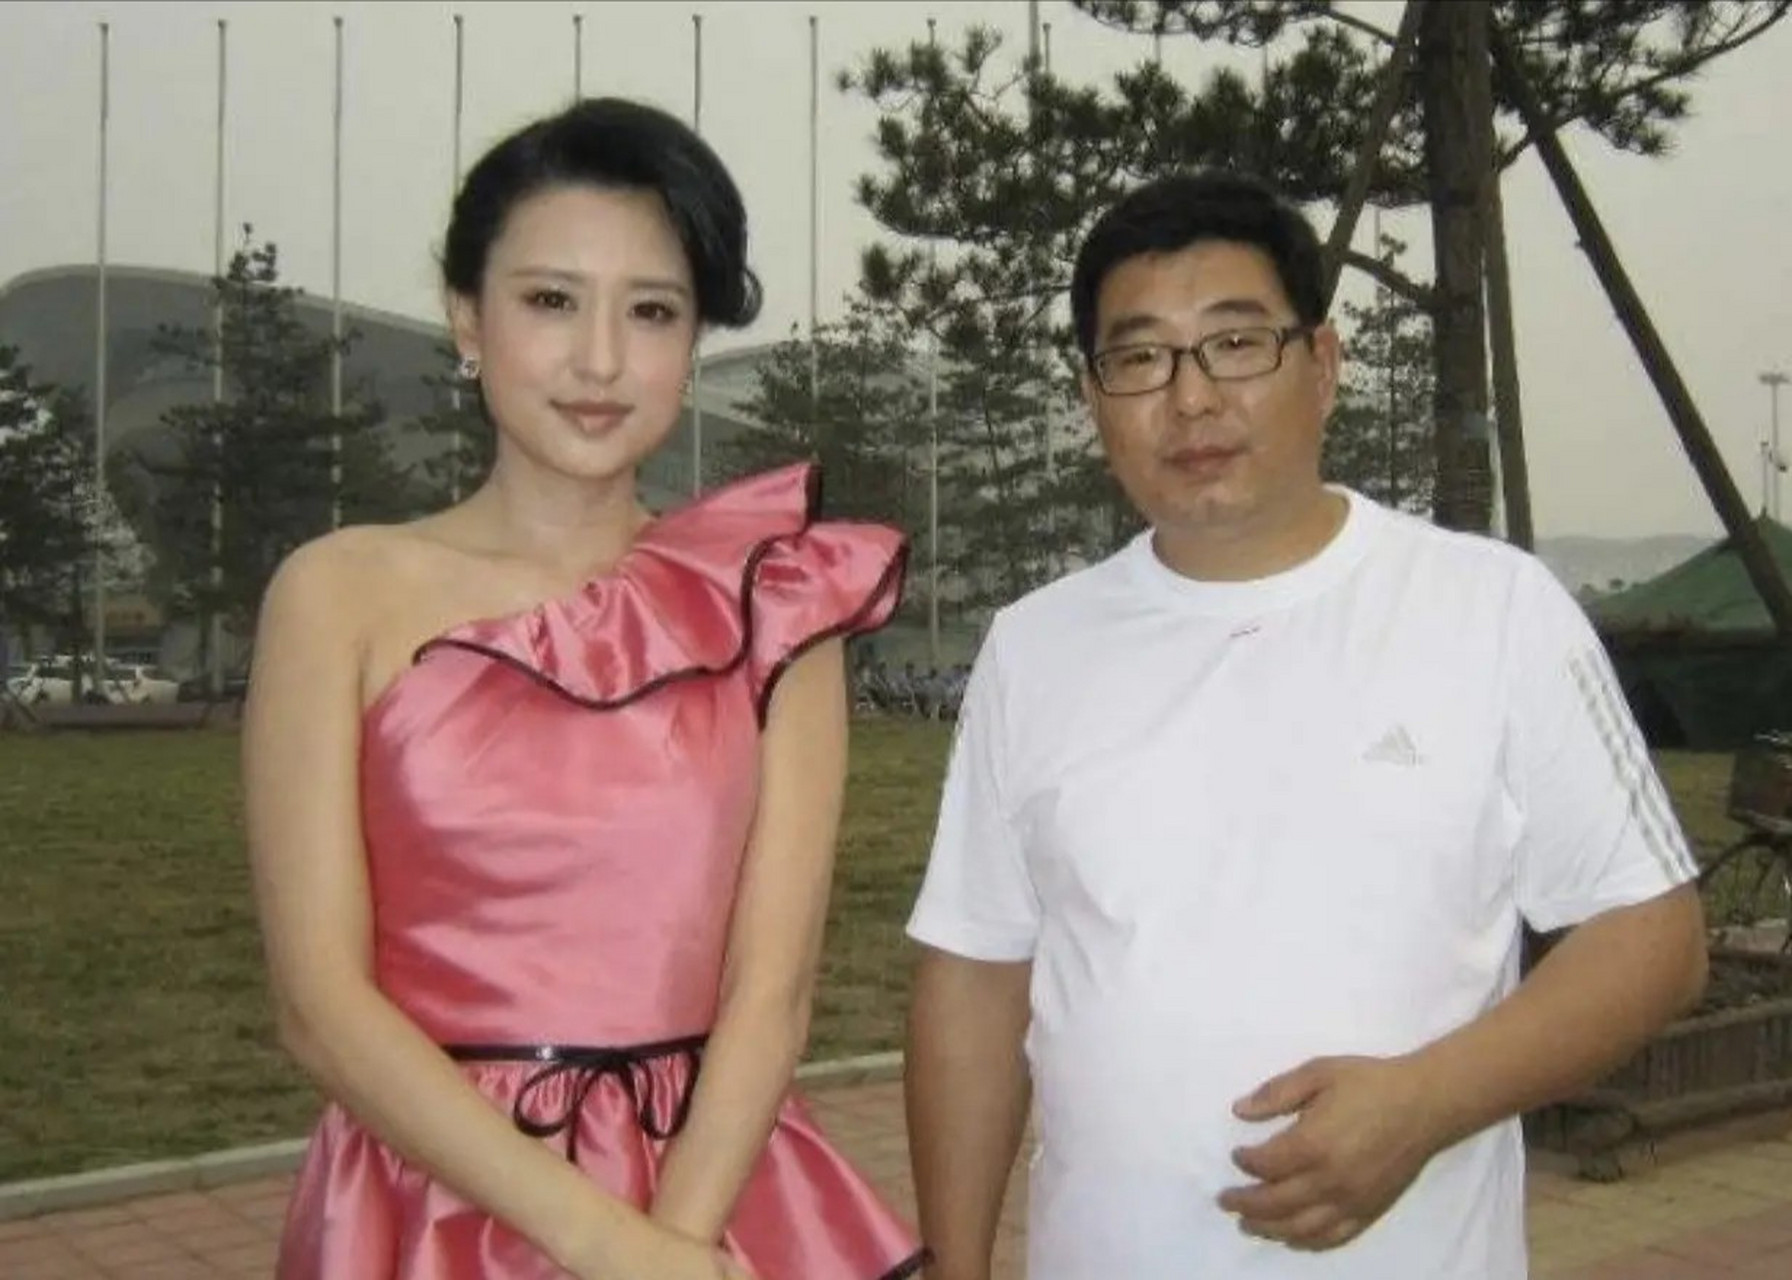 当年,54岁的富商王吉财,看上了34岁的央视主持人张蕾,张蕾赶紧拒绝: